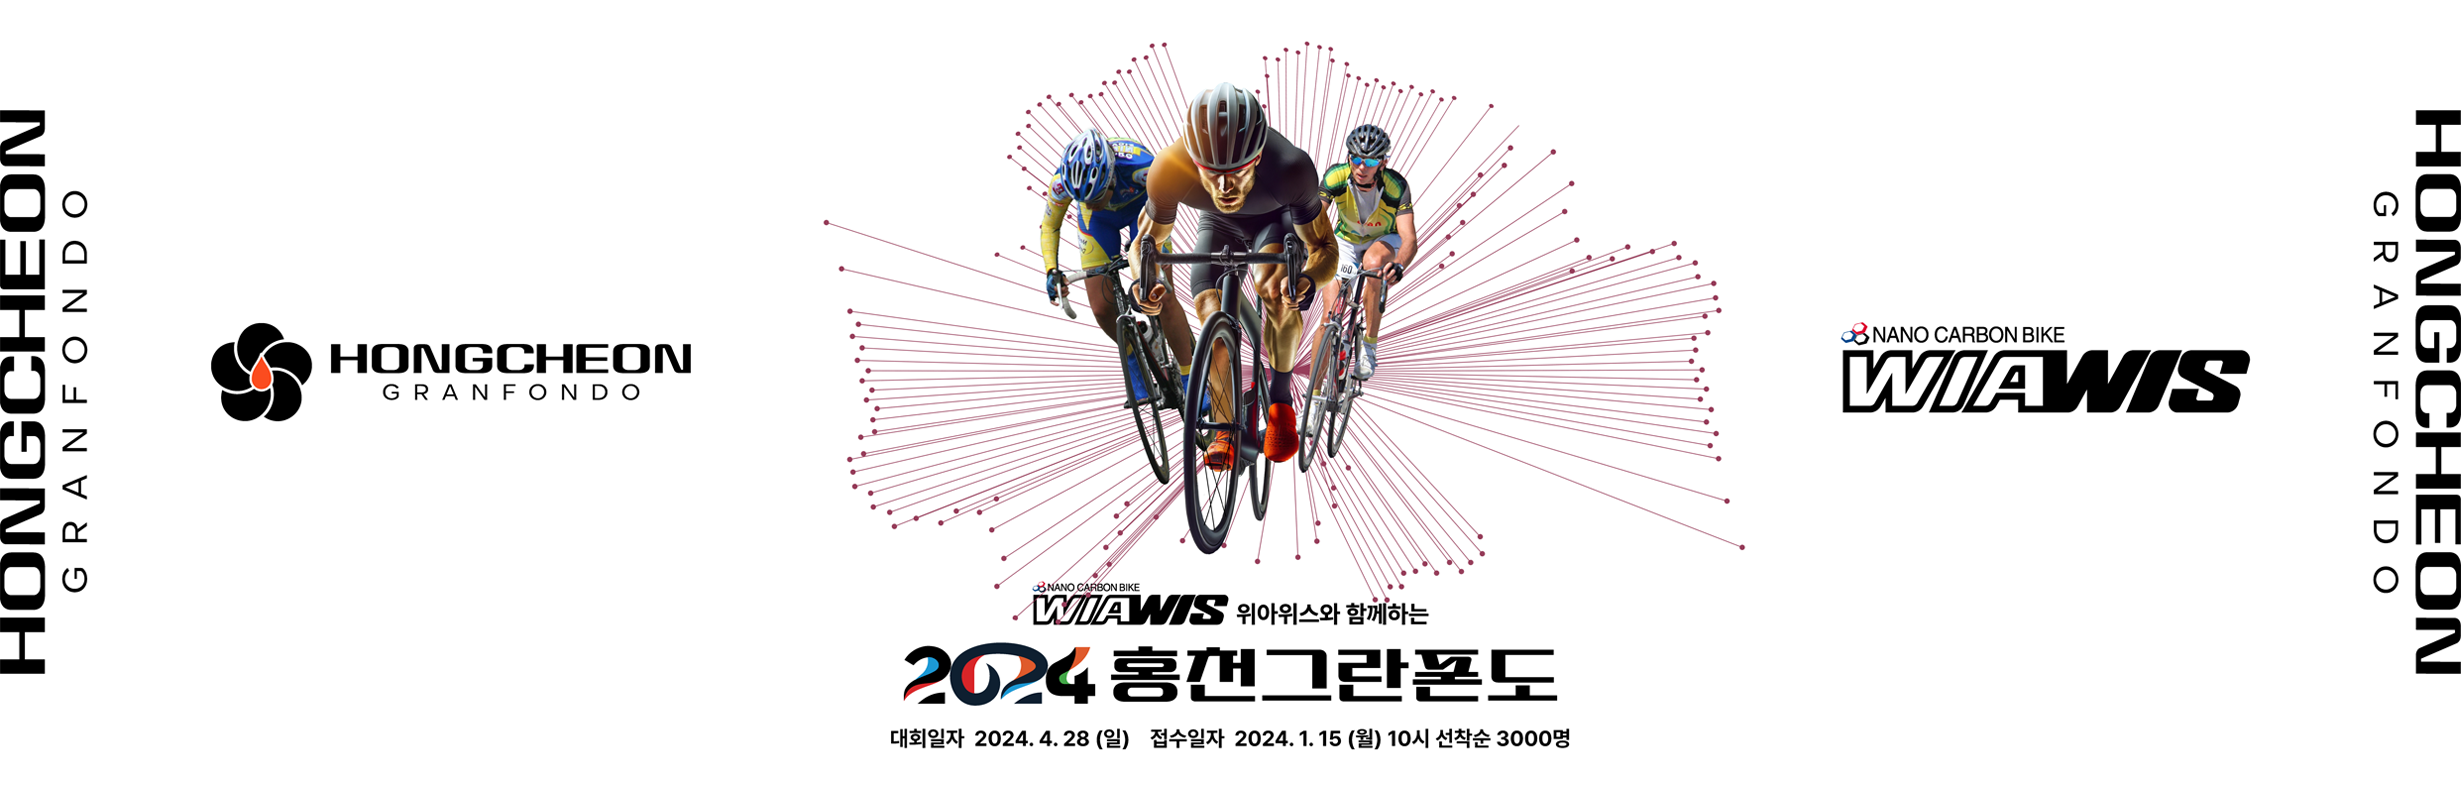 홍천그란폰도 21년 개최 연기 및 22년 4월17일 예정 : 네이버 블로그